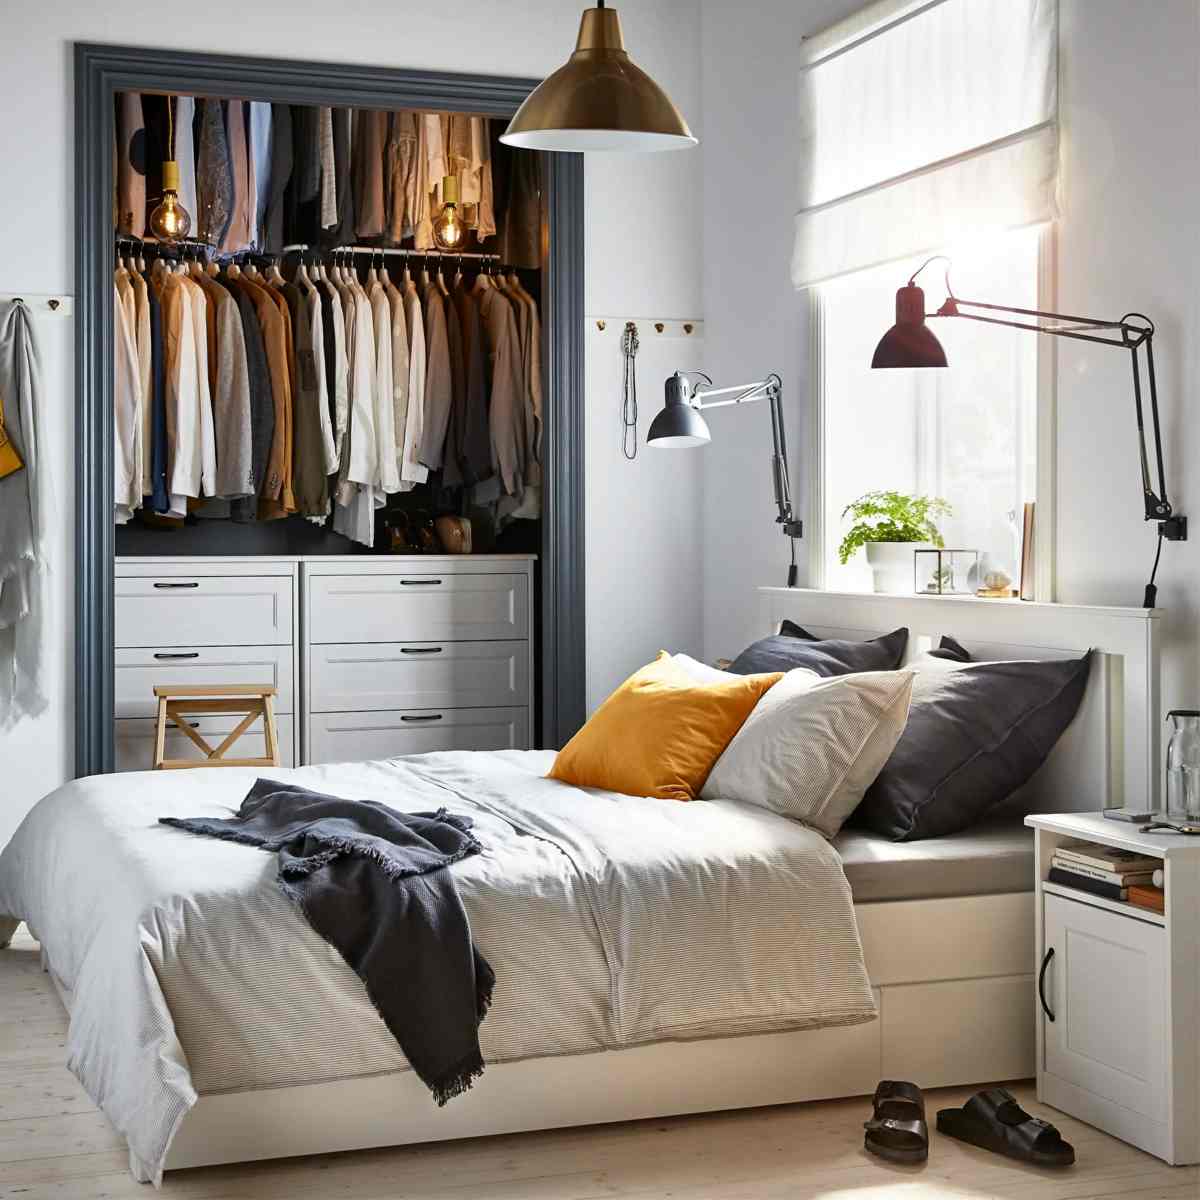 12 qm Zimmer einrichten mit Möbeln von Ikea in Weiß und begehbarem Kleiderschrank